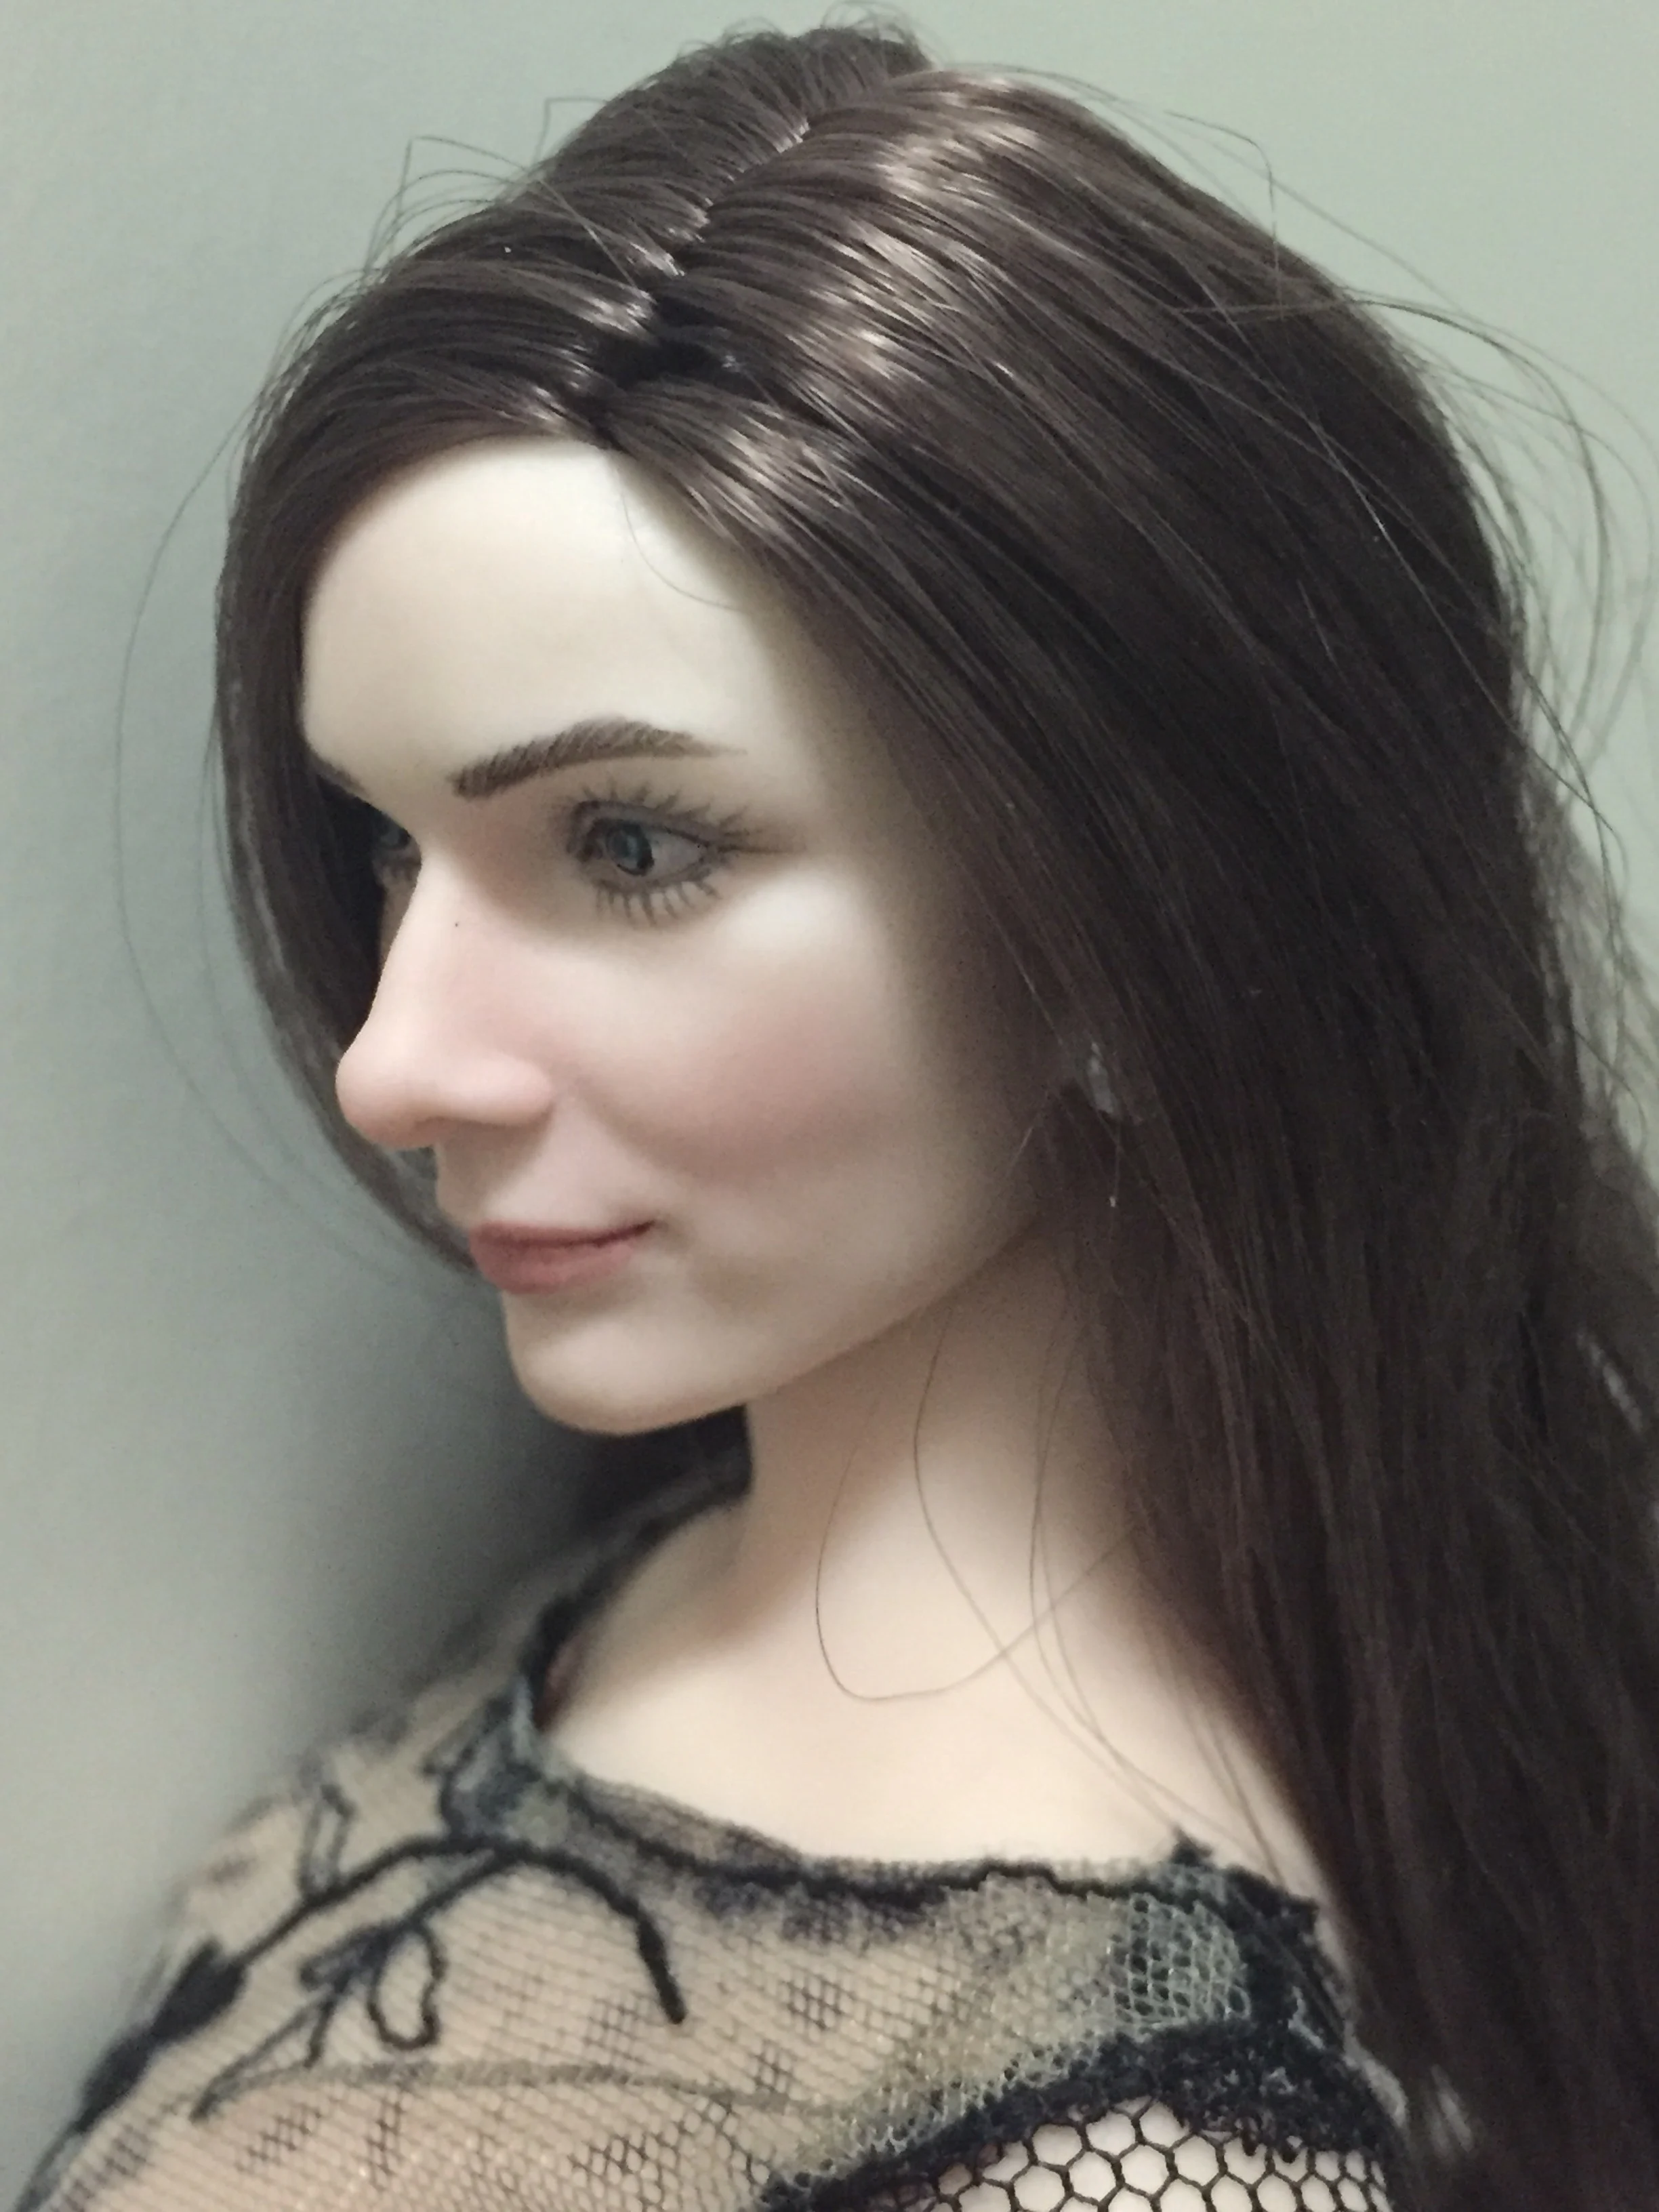 Коллекция 1/6 весы Одри Хепберн голова лепить с реальными волосами подходит для 12 дюймов фигурка игрушка Phicen белая кожа модель тела